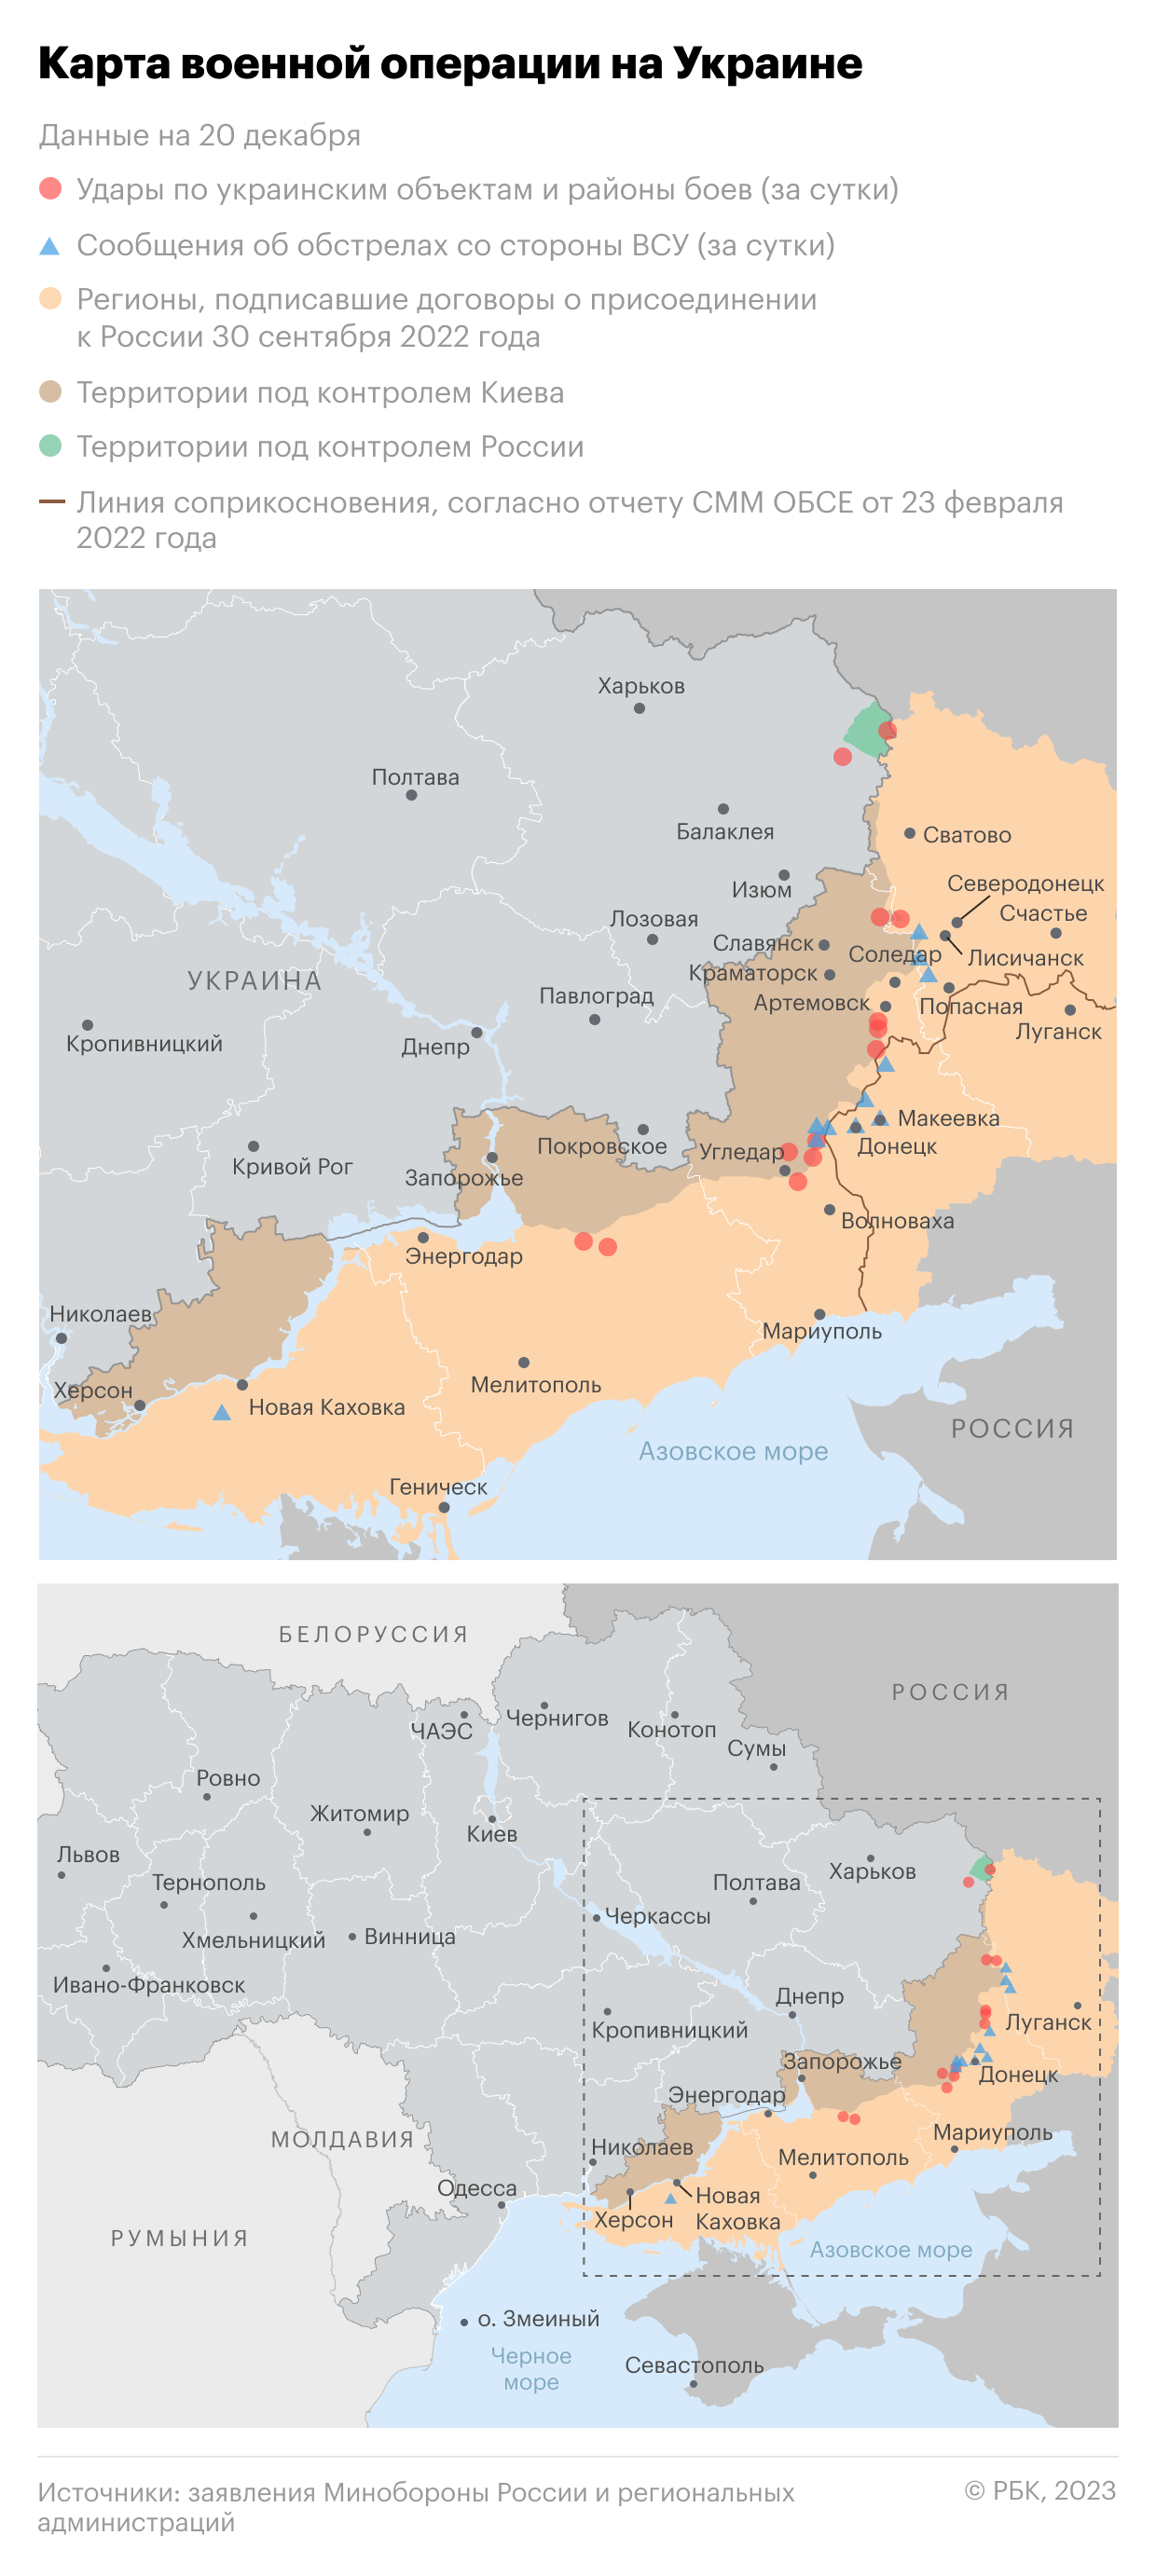 Военная операция на Украине. Карта на 20 декабря